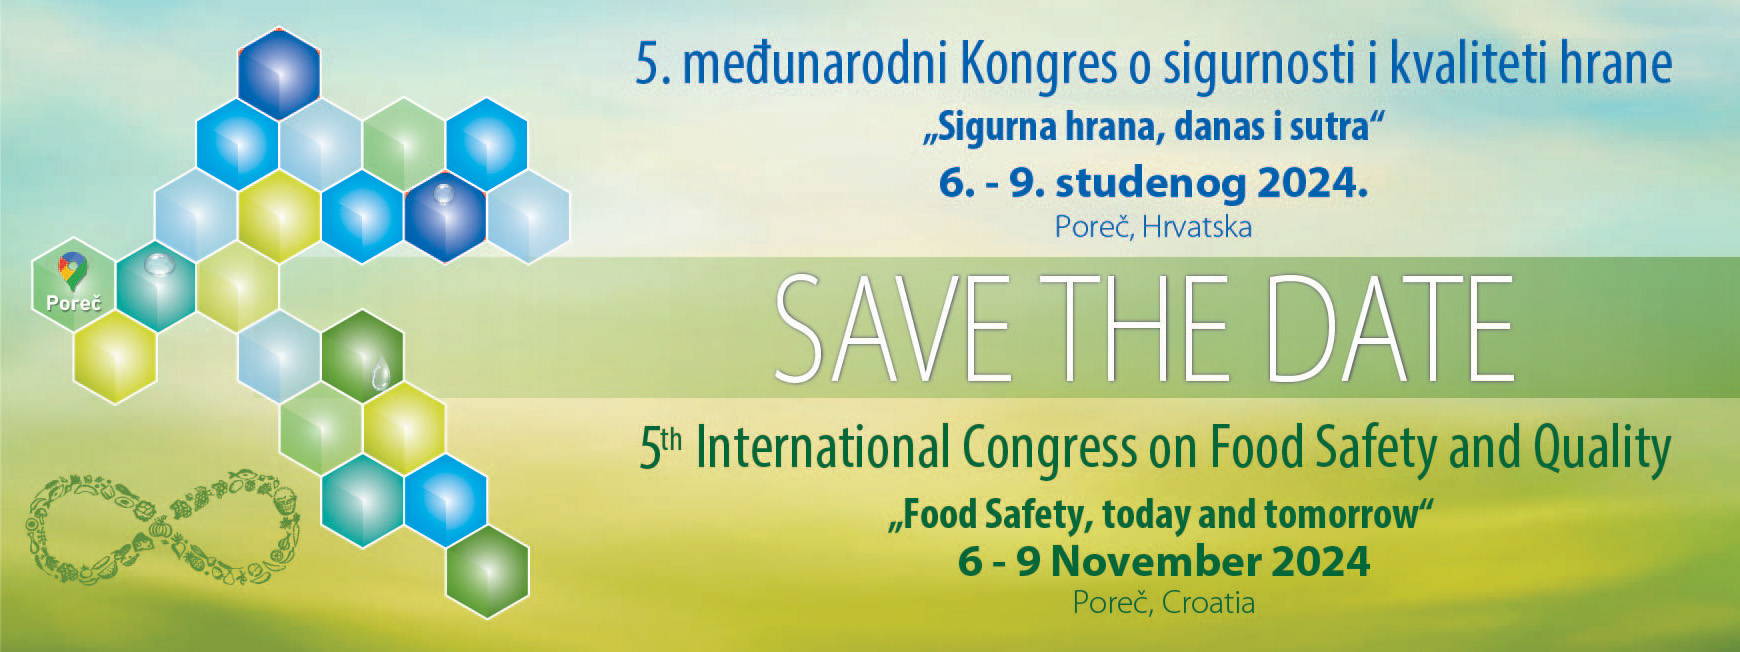 5. Kongres o sigurnosti i kvaliteti hrane